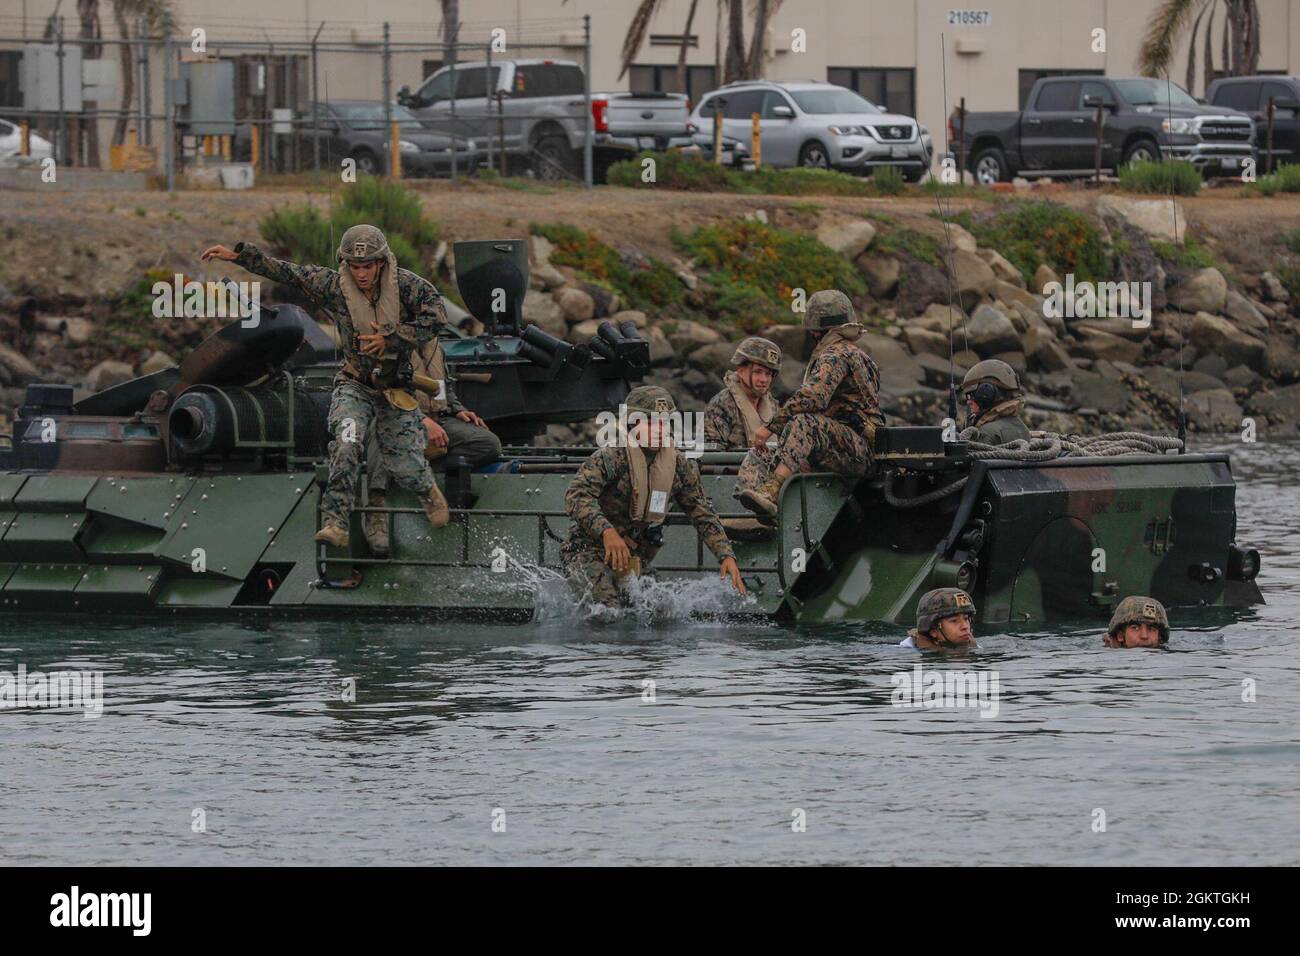 Marines des États-Unis avec Co. A, 1er Bataillon, 5e Régiment maritime, 1re Division marine (1er MARDIV) et Co. B, bataillon des amphibiens d'assaut 3d, 1er MARDIV, entrent dans le bassin de bateaux de Del Mar pendant l'entraînement de véhicule d'assaut amphibie AAV-P7/A1 au camp de base du corps maritime Pendleton, Californie, le 29 juin 2021. La formation a été menée pour s'assurer que les Marines maîtrisent les procédures de sécurité pour les opérations d'eau. Banque D'Images